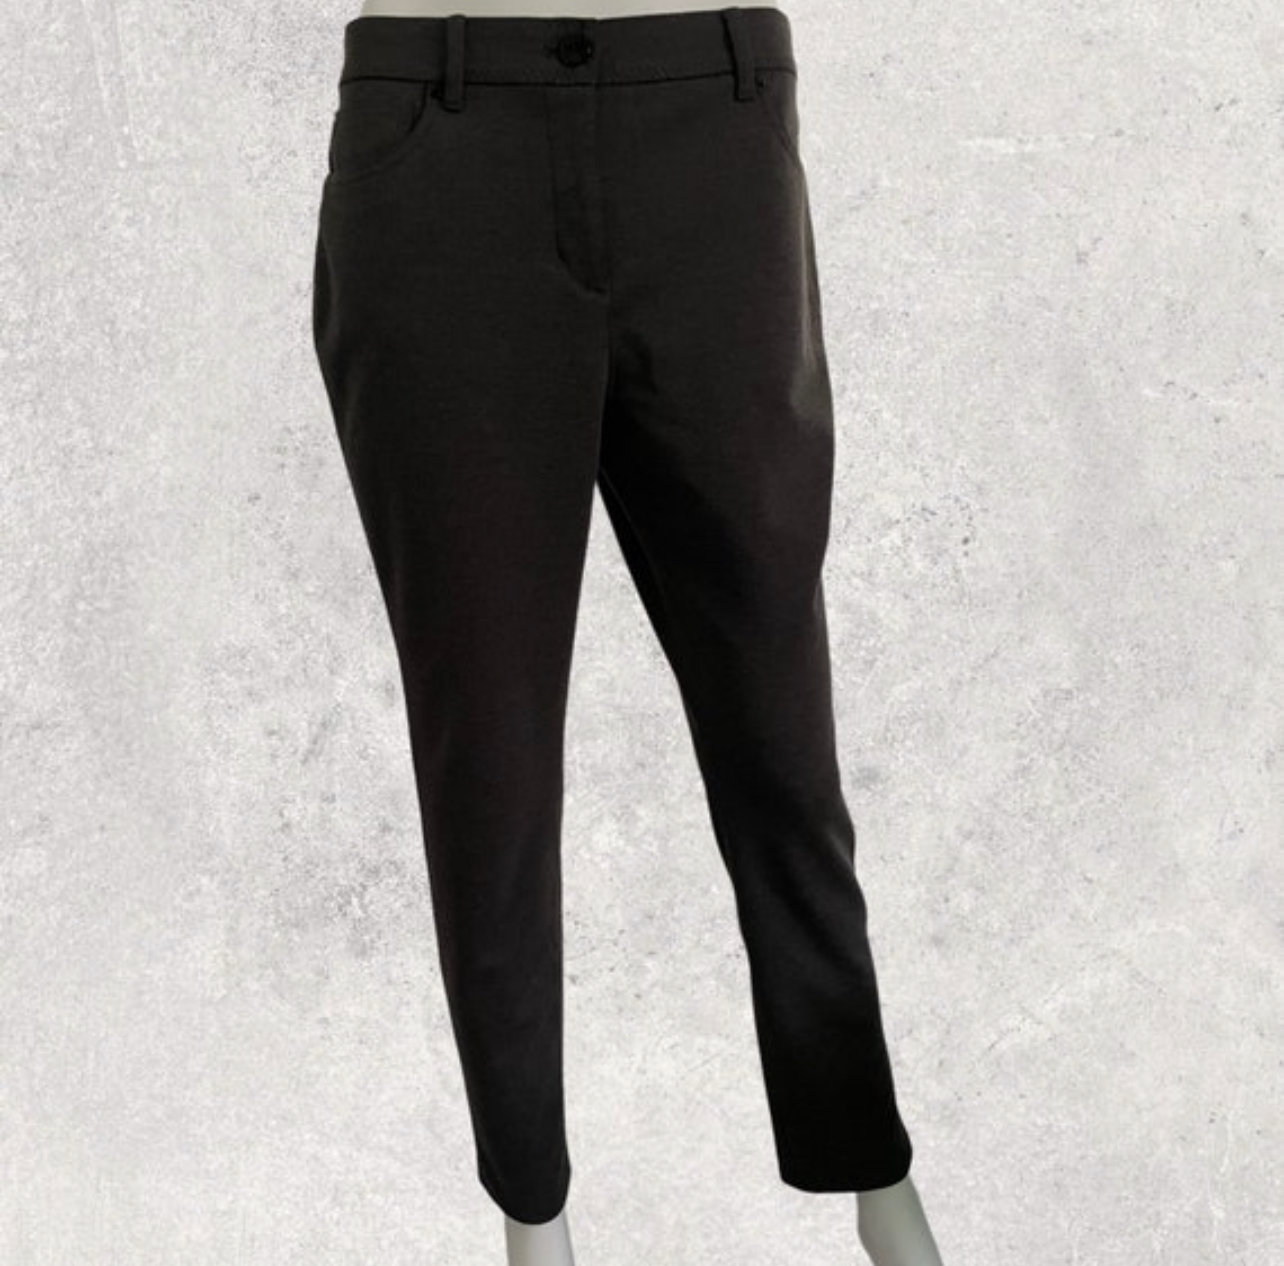 Women's Black Stretch Dress Pants Size 12 